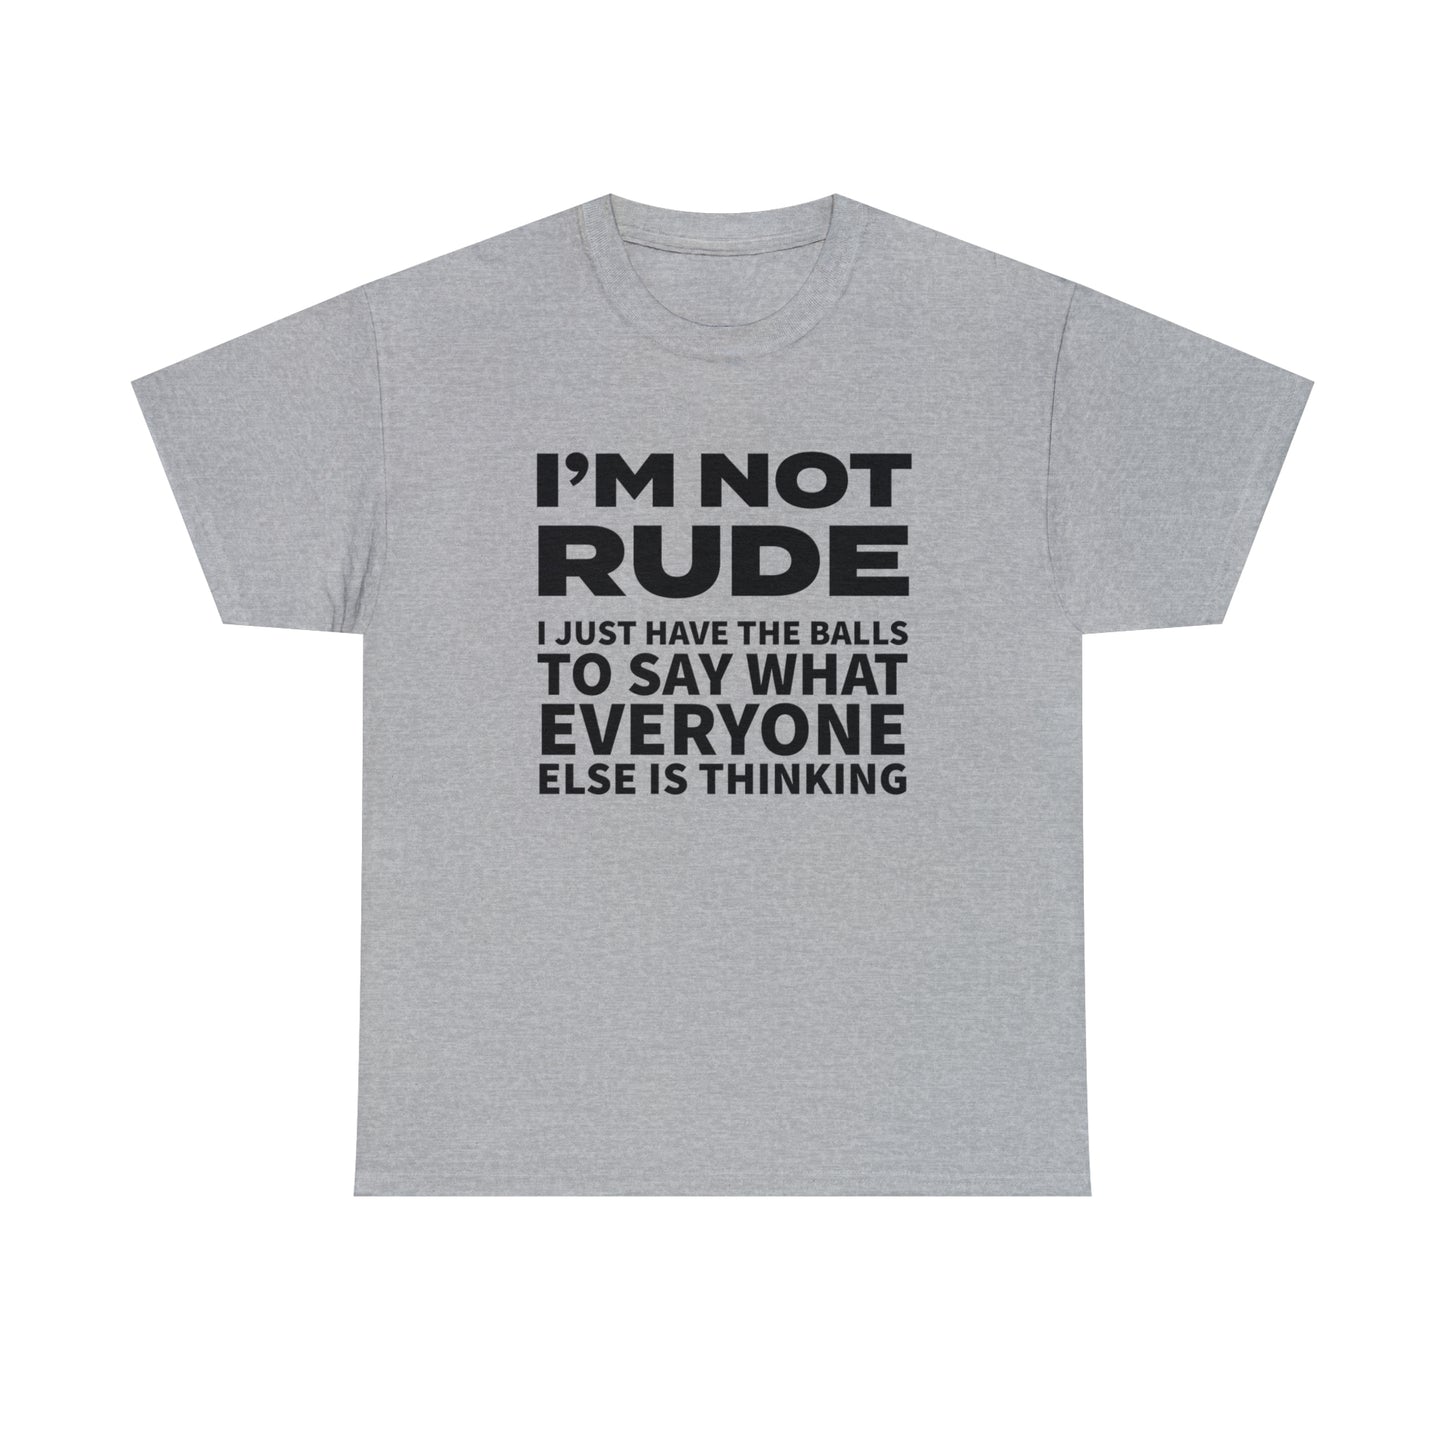 Not Rude T-Shirt For Ballsy TShirt For Speak Up T Shirt For Not Afraid T-Shirt For Conservative Shirt